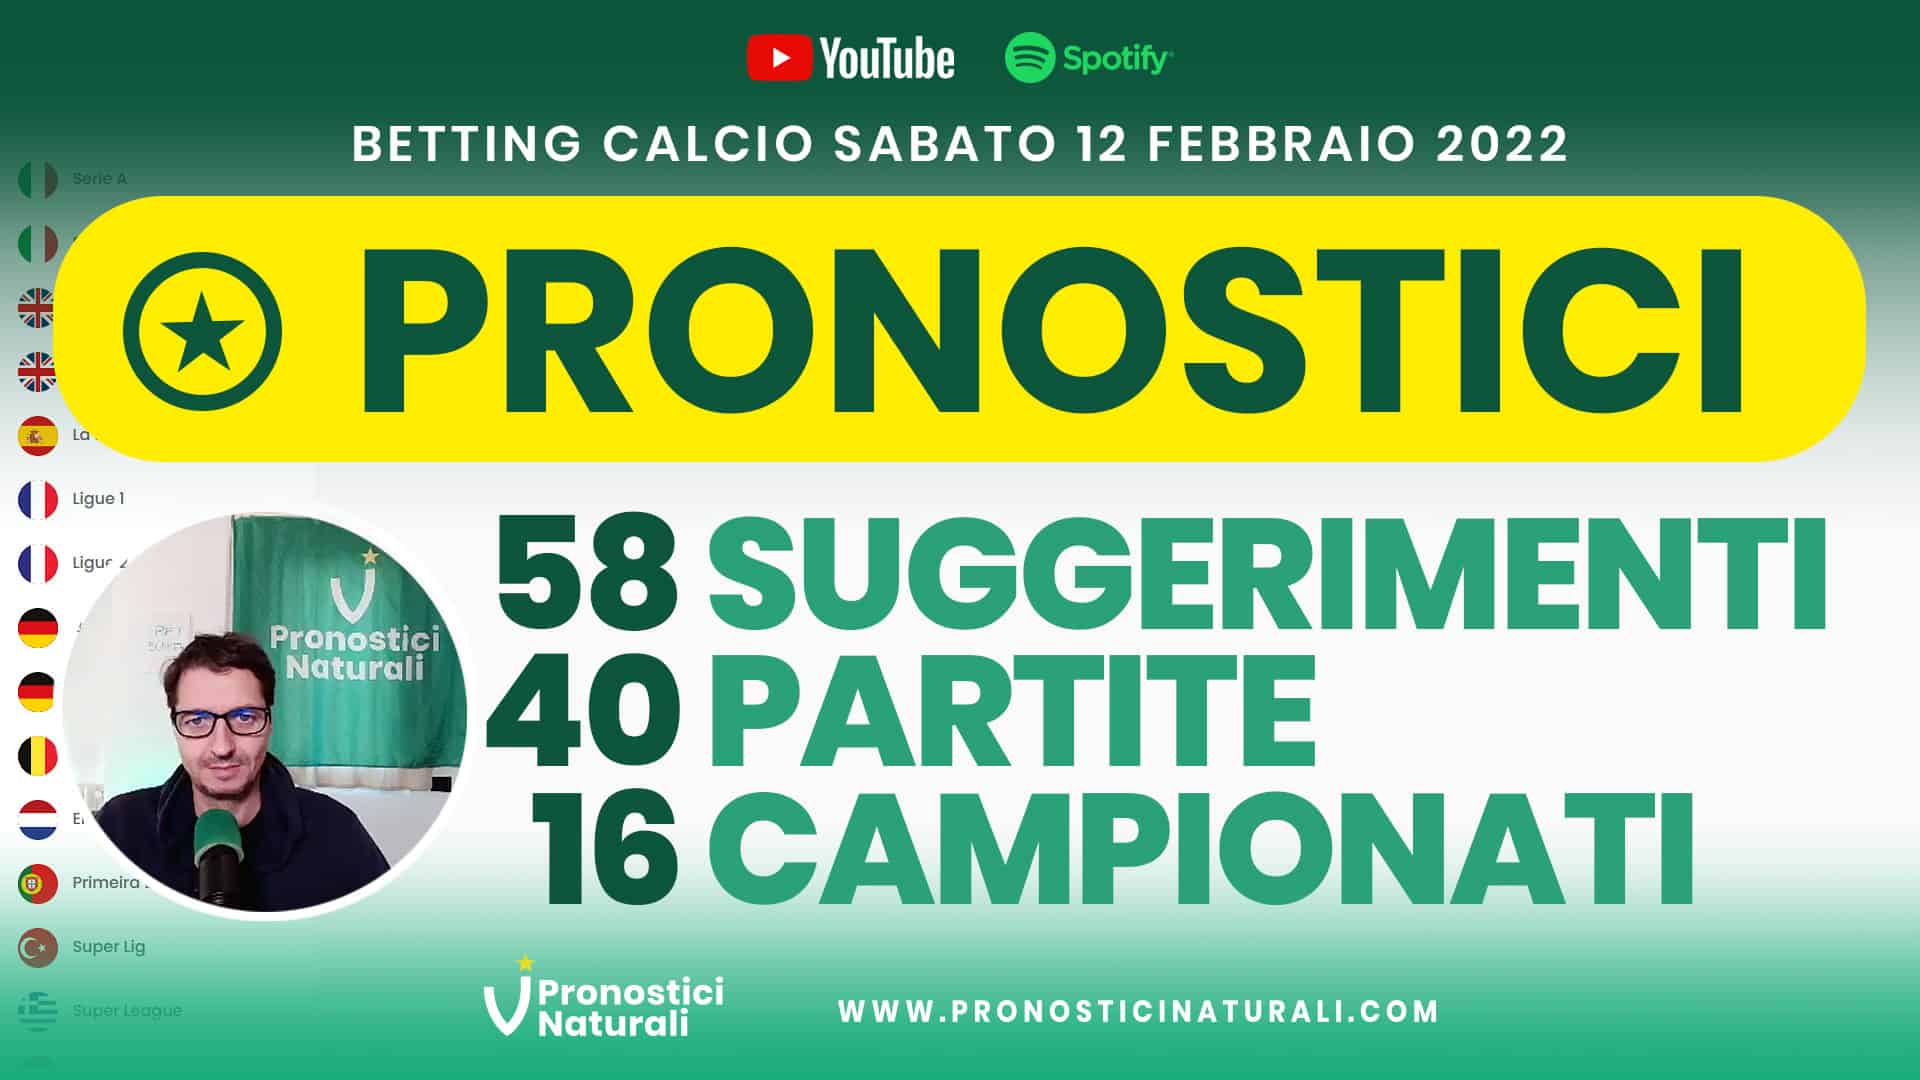 Pronostici Naturali Video Analisi Scommesse Betting Calcio Analisi Pre Partite Sabato 12 Febbraio 2022